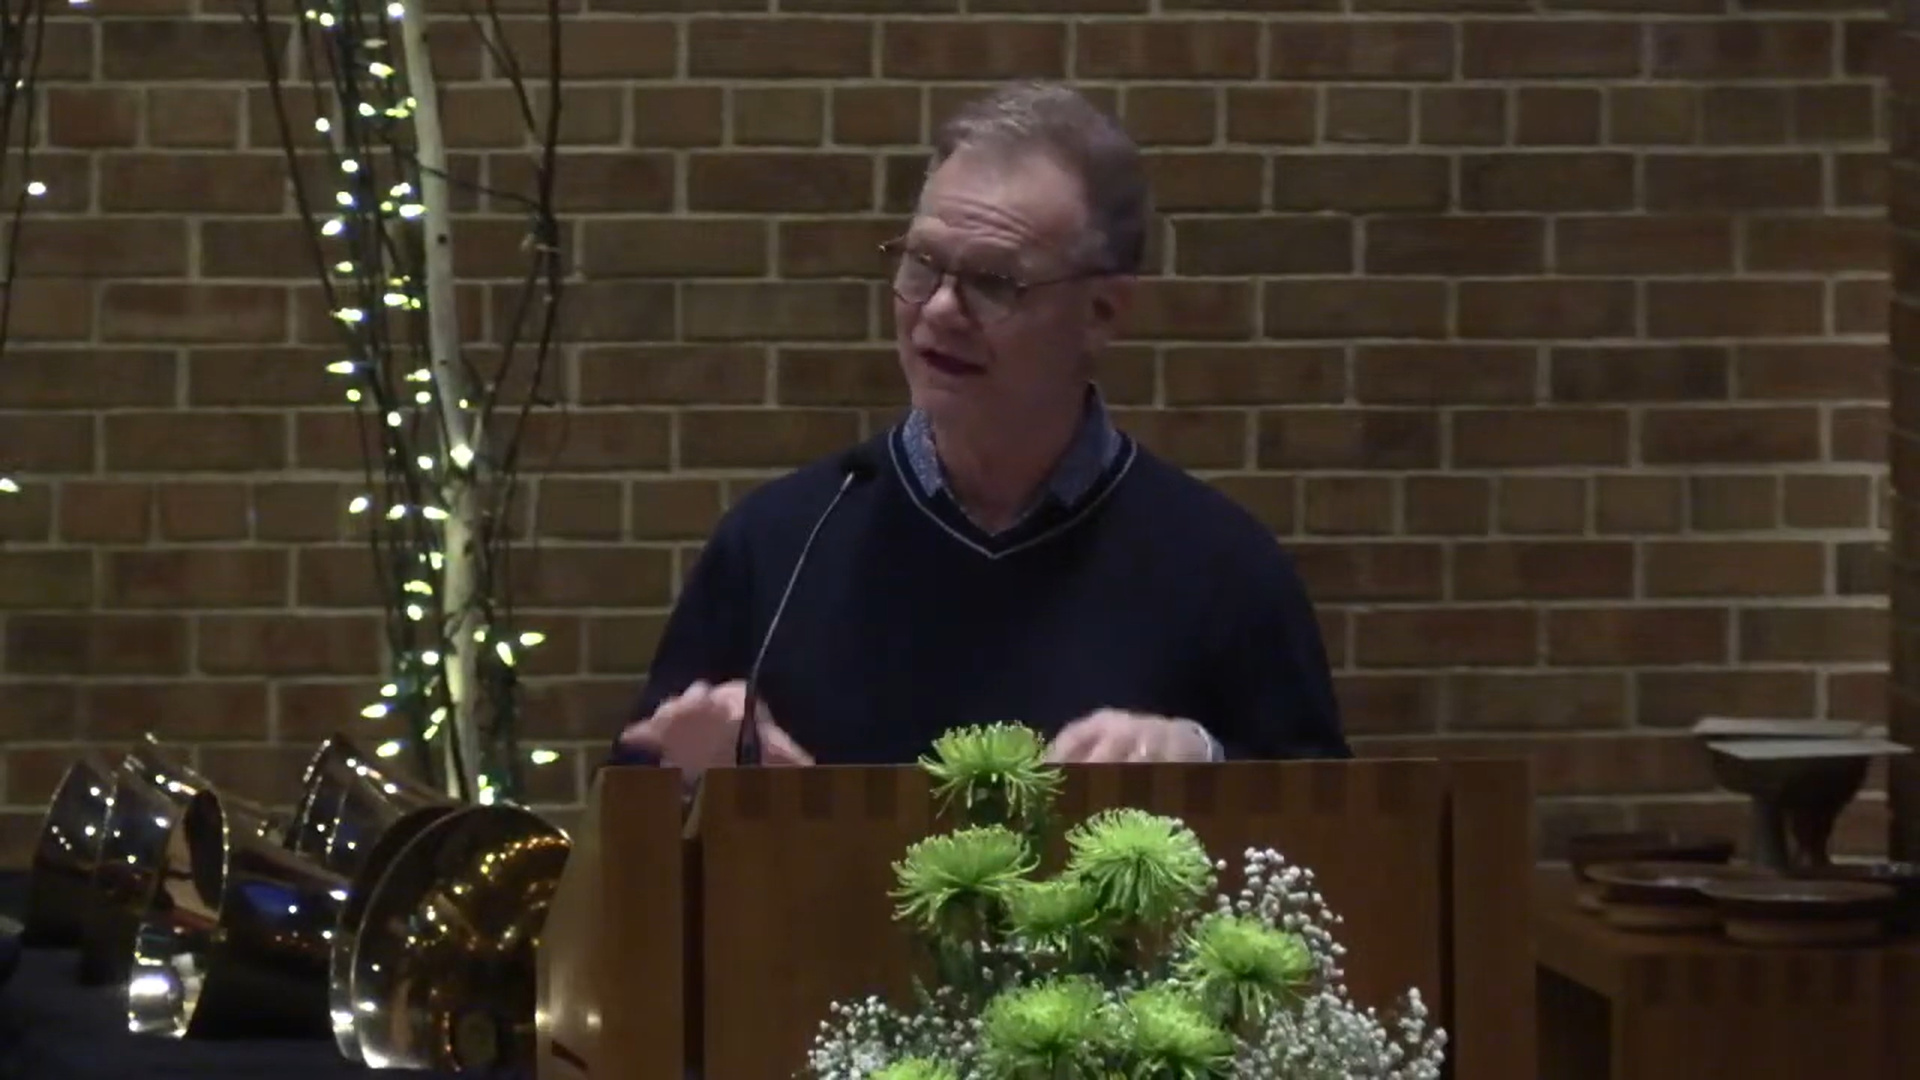 Dan Bielenberg preaching in Nativity Lutheran Church's sanctuary